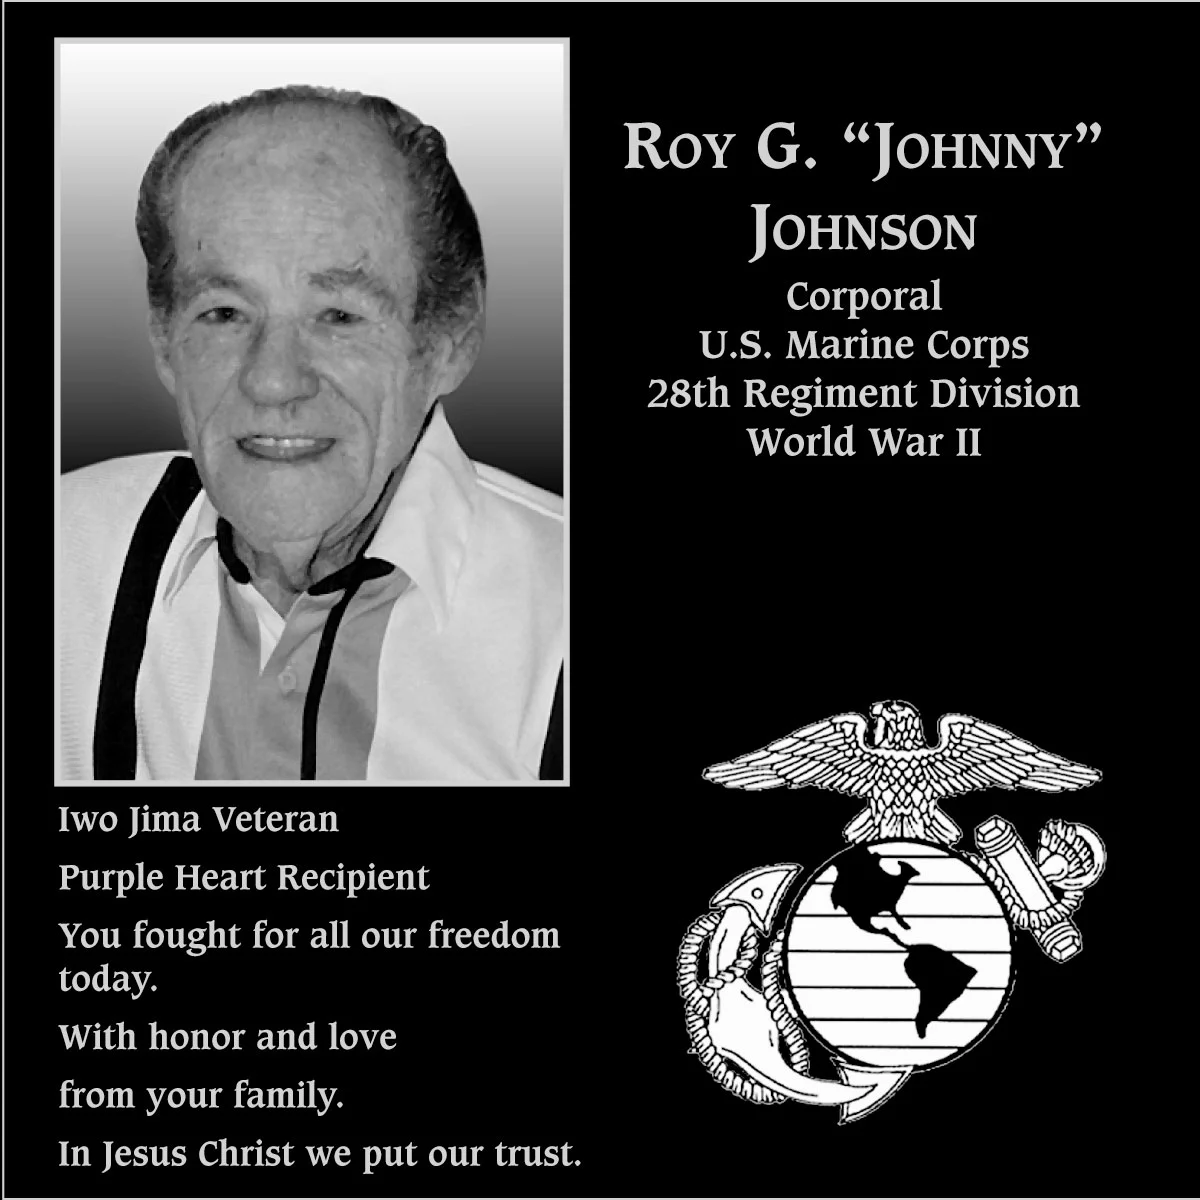 Roy G “Johnny” Johnson